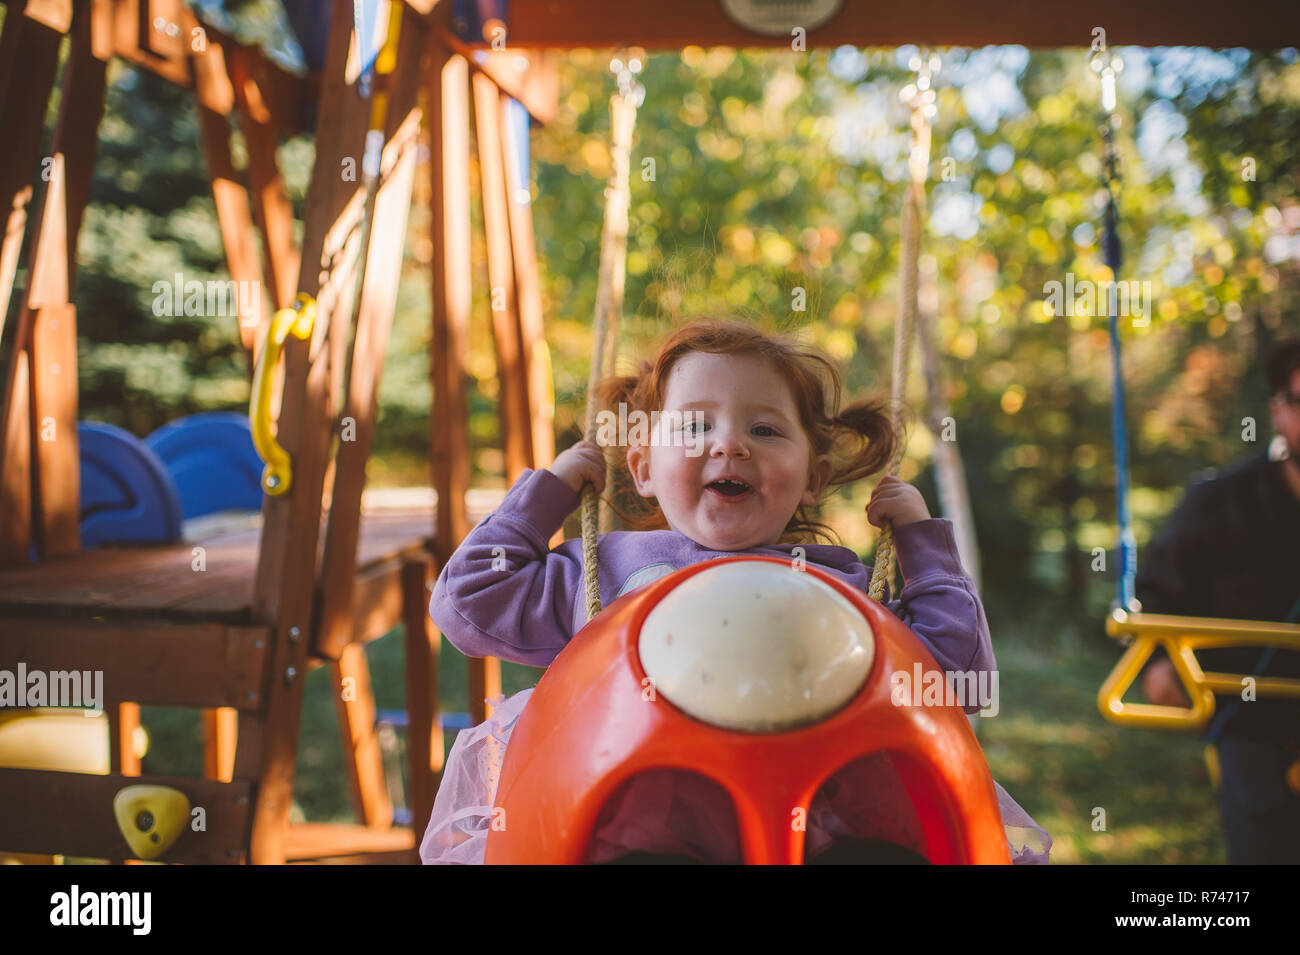 La ragazza con i capelli rossi basculante in parco giochi altalena, ritratto Foto Stock